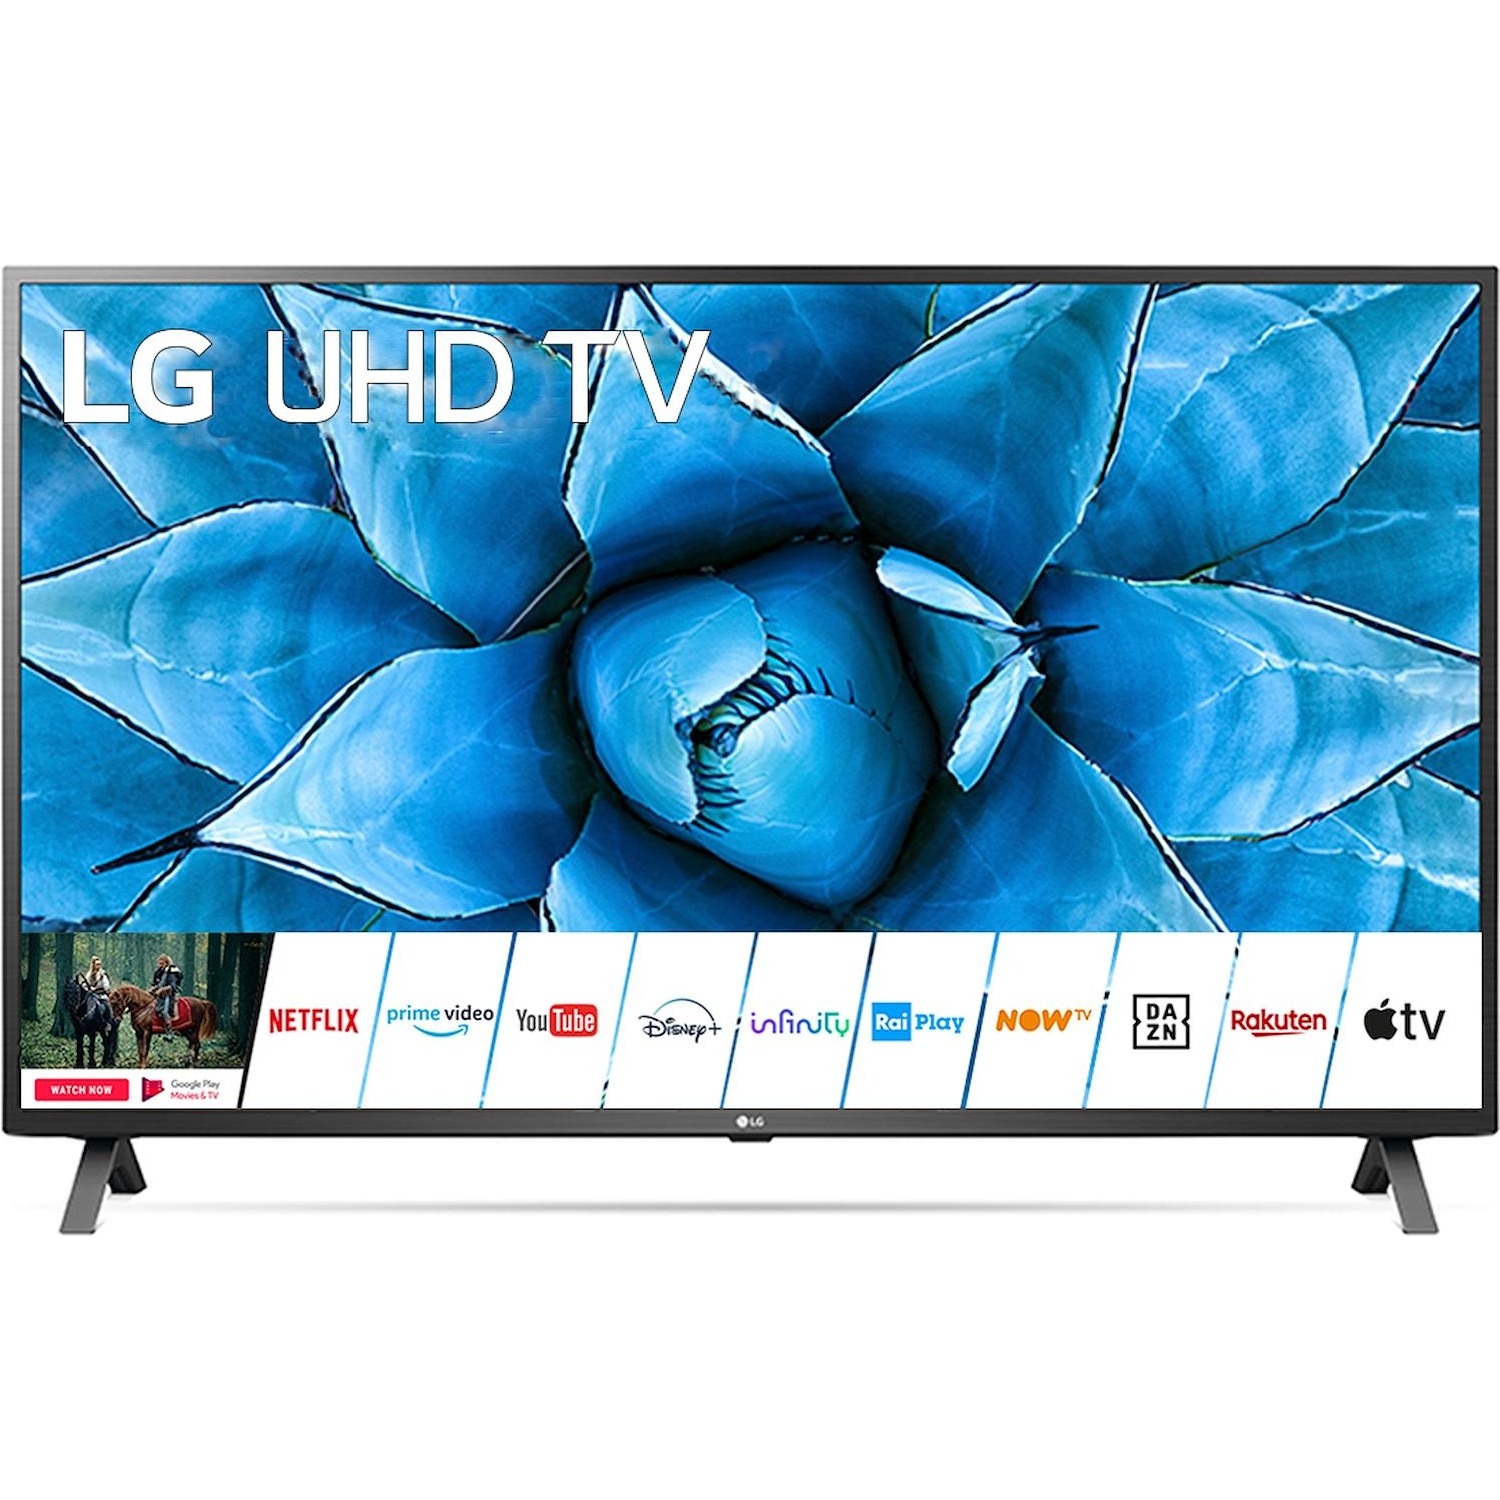 Immagine per TV LED Smart 4K UHD LG 65UN73006 da DIMOStore